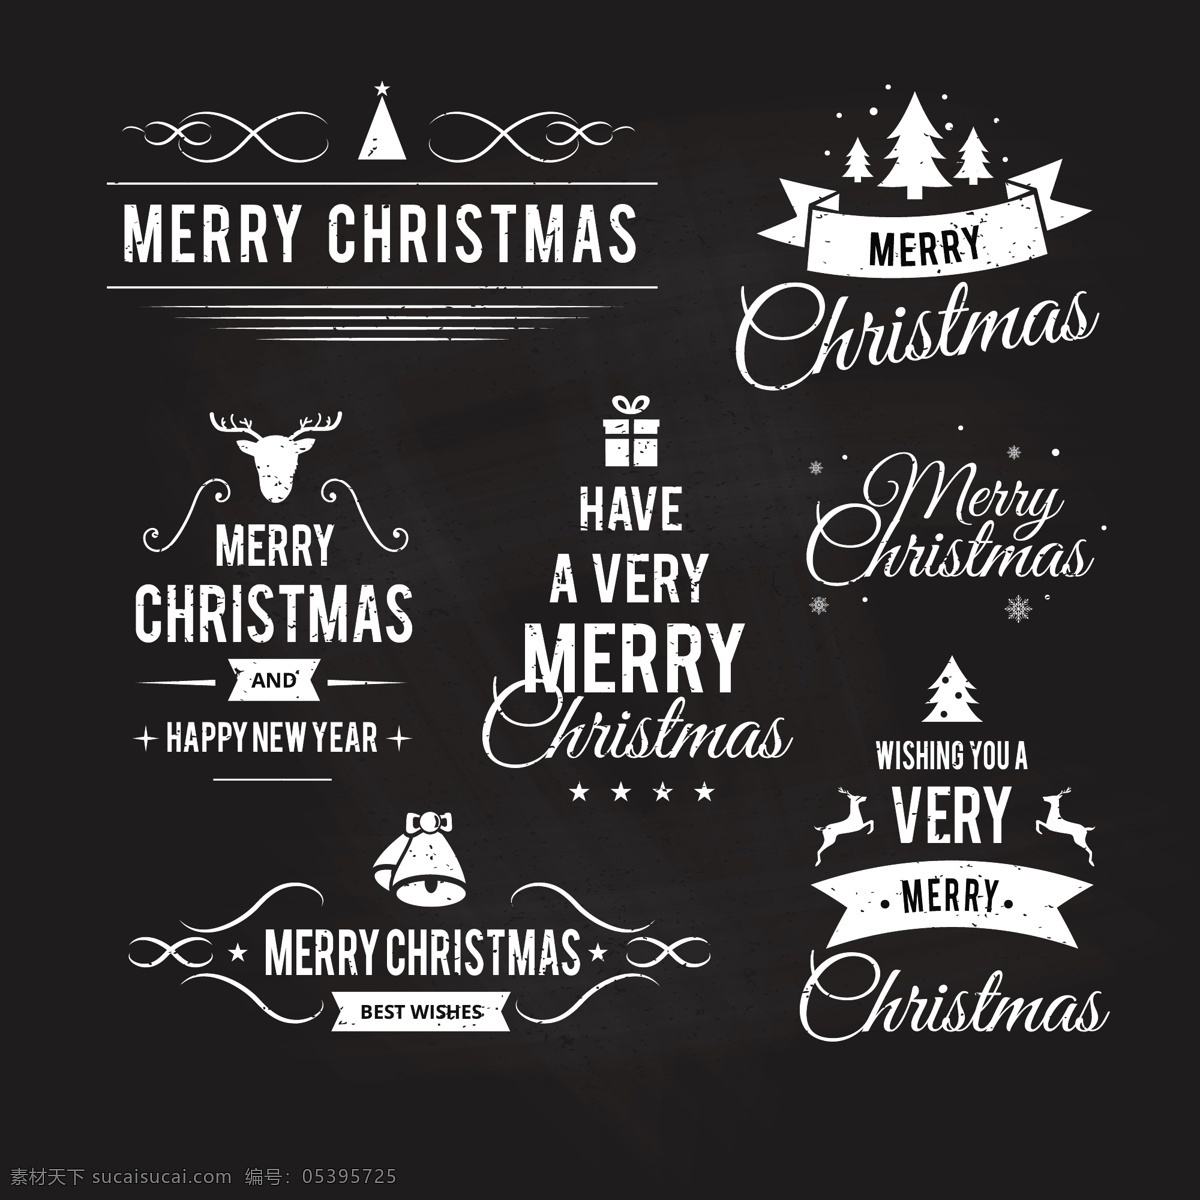 黑色 圣诞 英文 标签 元素 节日标签 圆形标签 圣诞庆典 圣诞标签 促销标签 创意标签下载 标签设计 矢量标签 英文标签 圣诞节日元素 2018圣诞